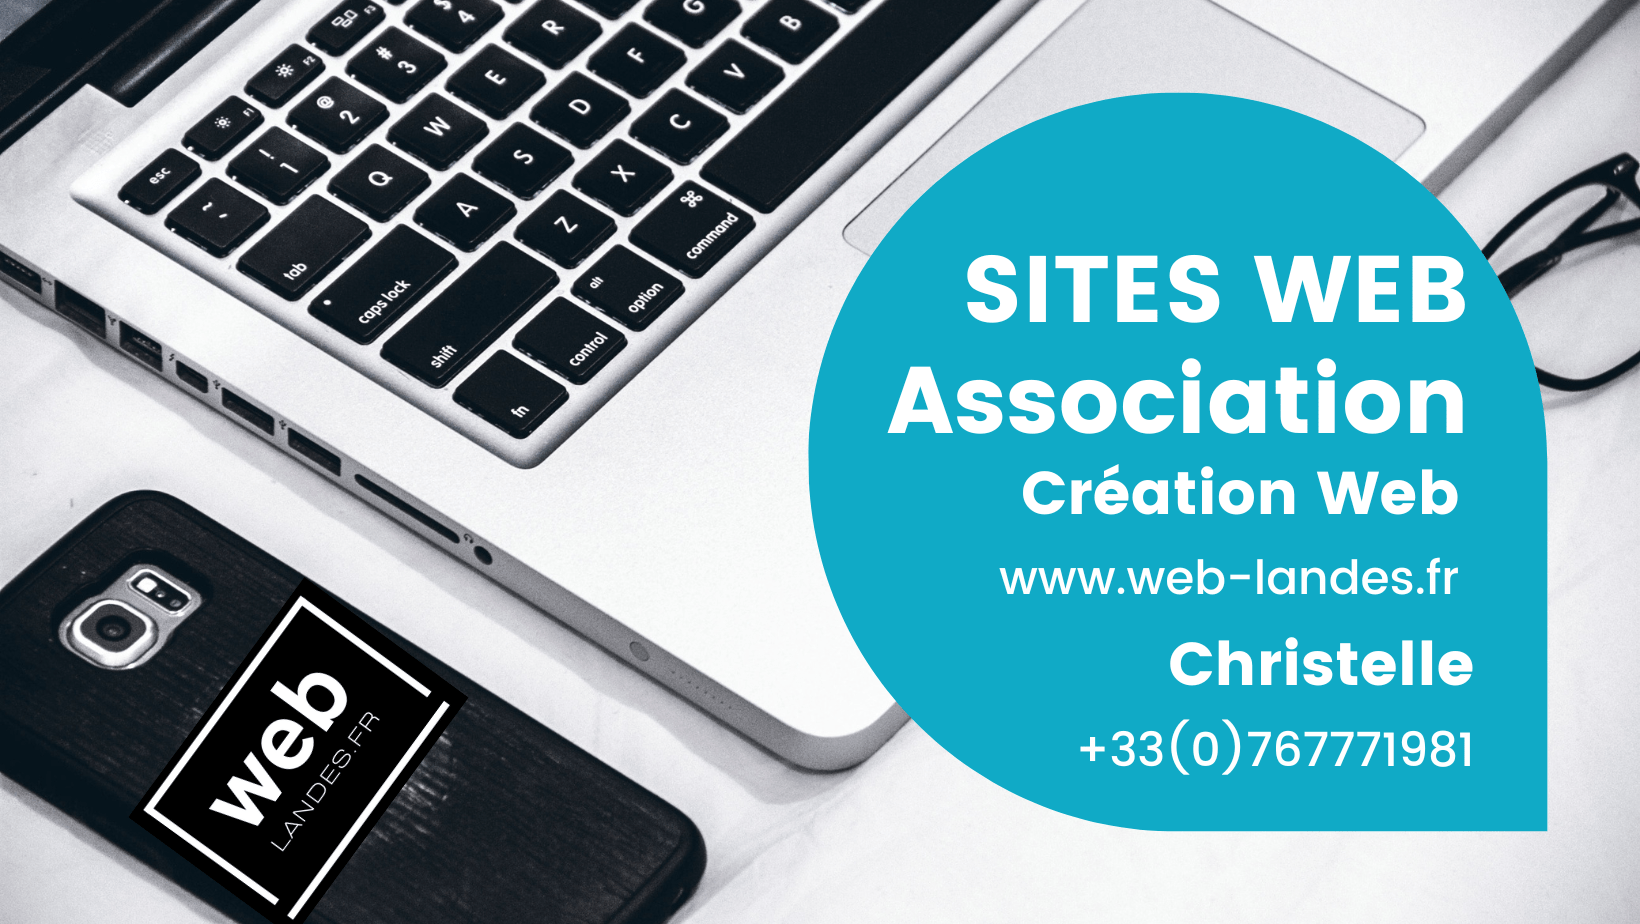 Contactez moi pour définir votre projet de site Web pour association!